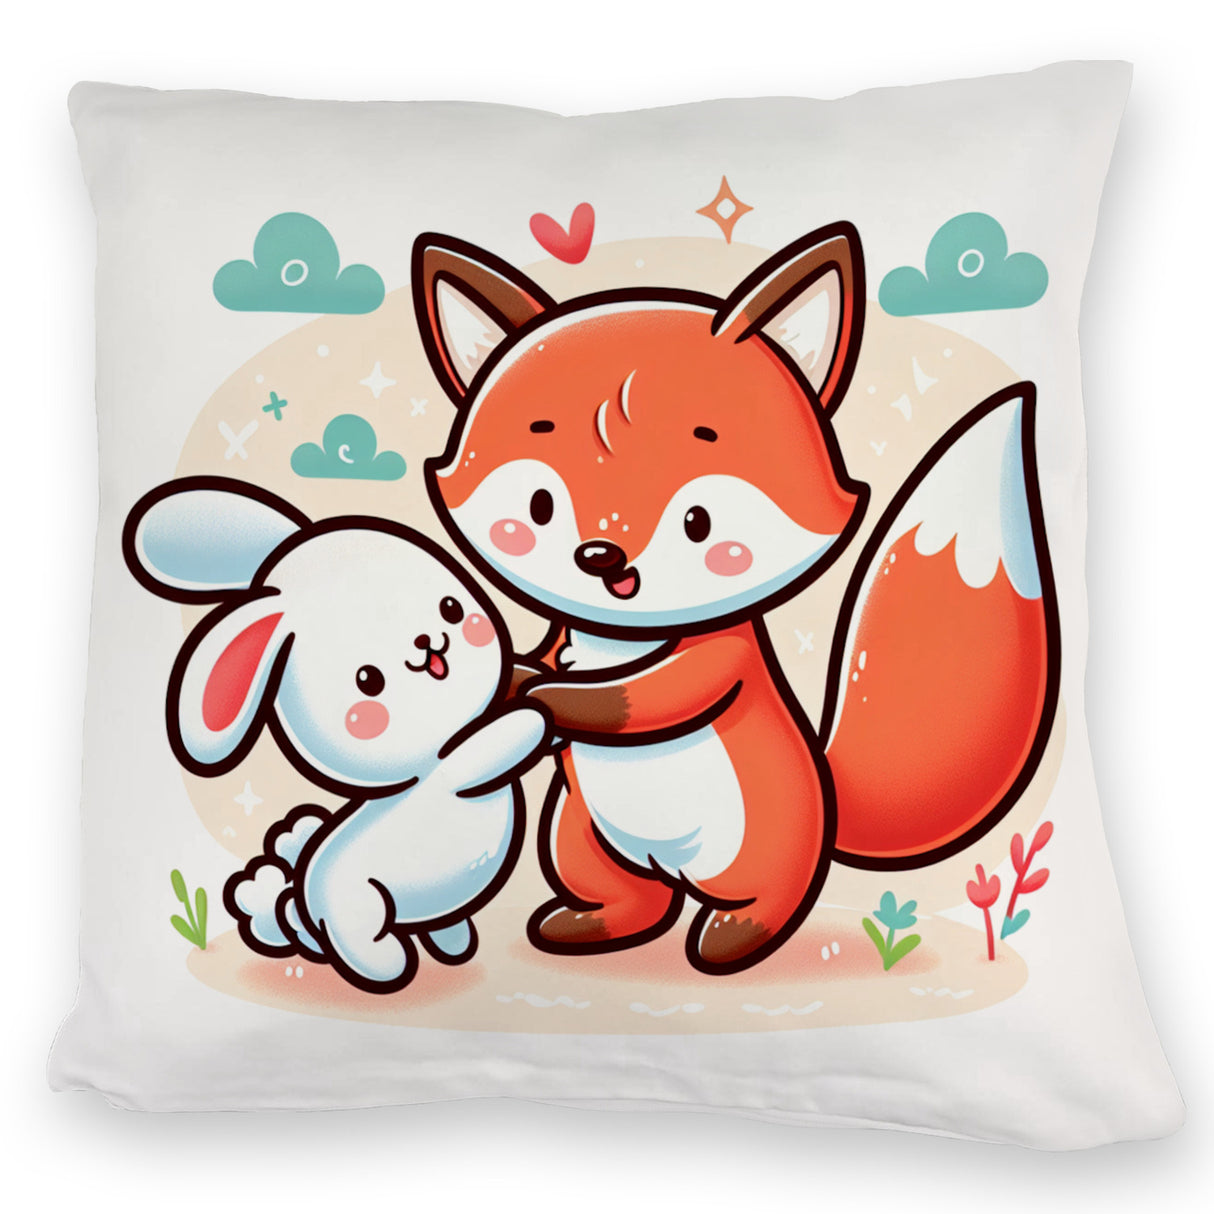 Fuchs und Kaninchen Kissen